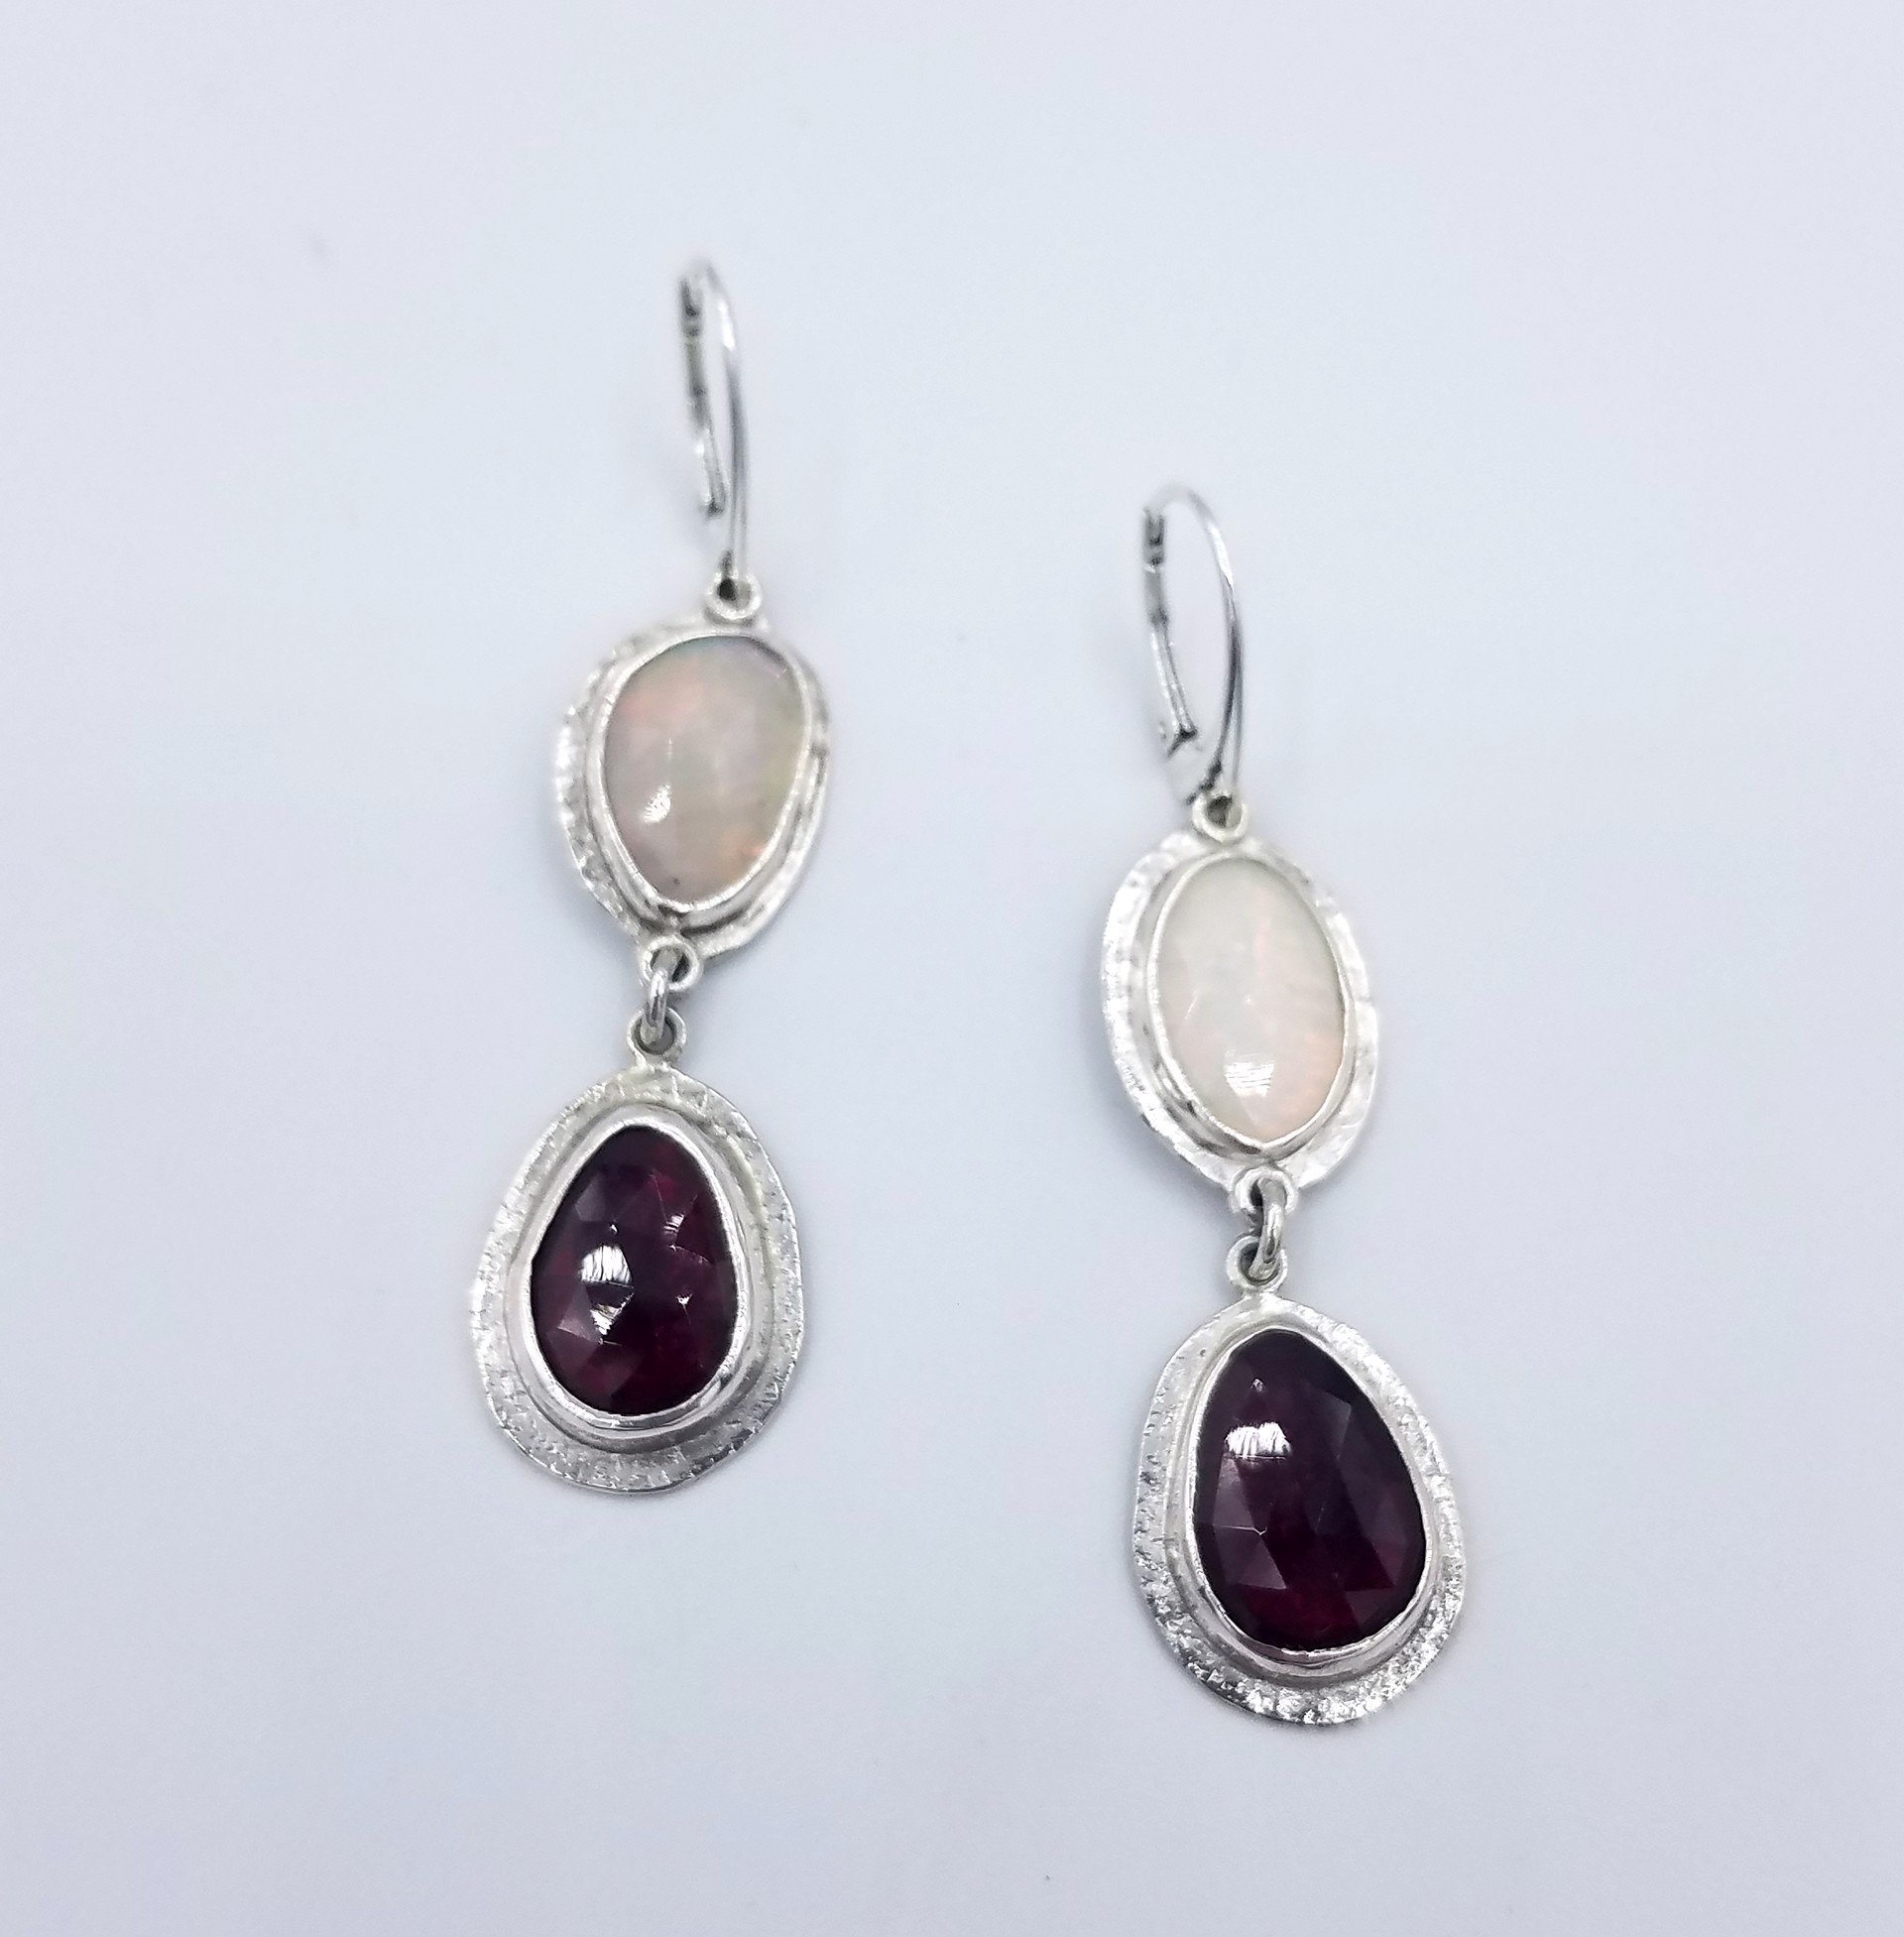 Opal & Garnet Earrings by Anita Shuler